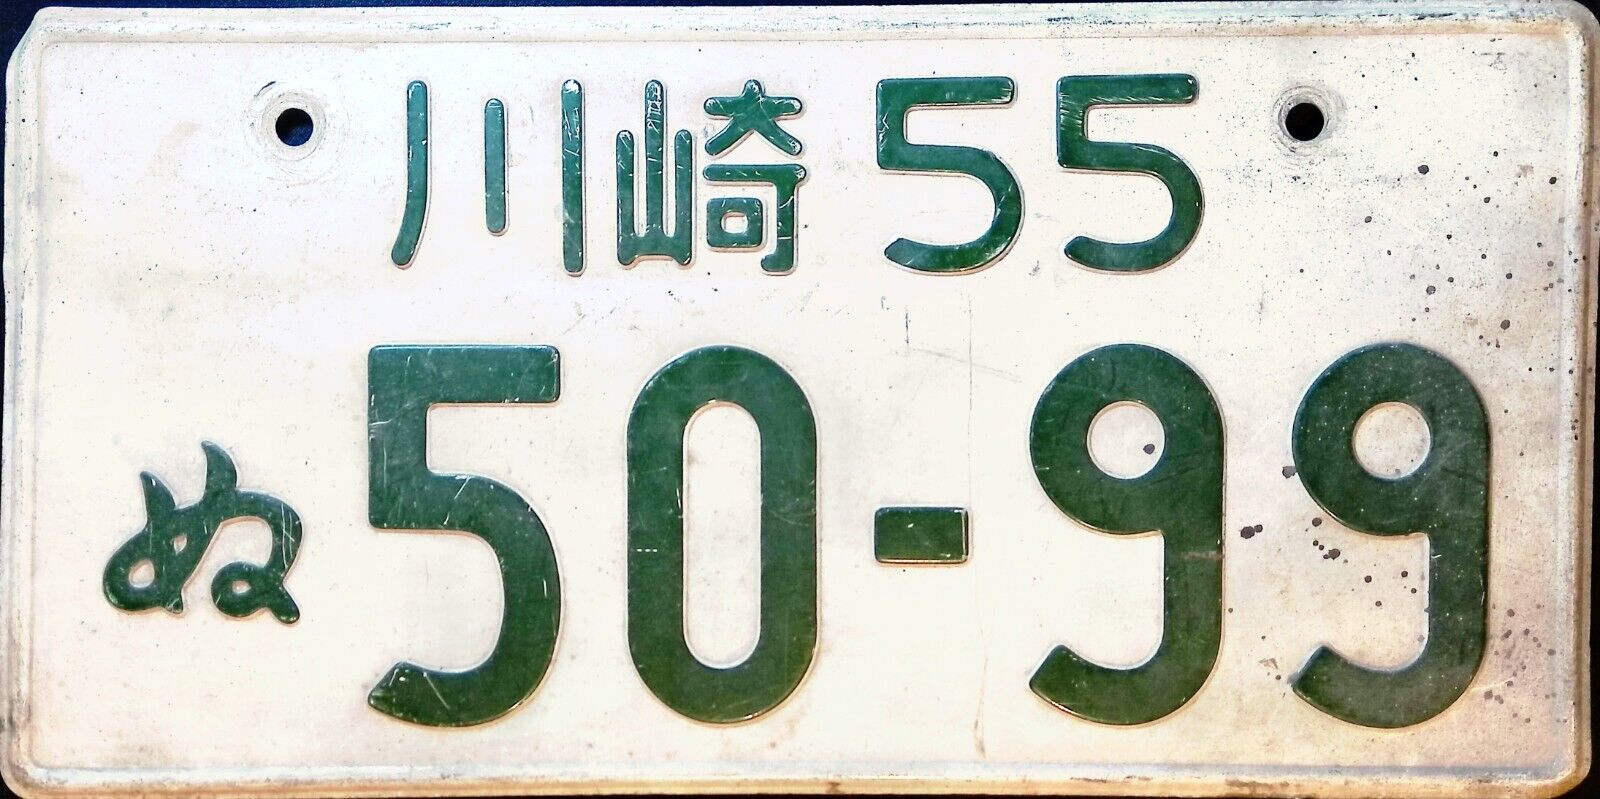 Genuine Japanese License Plates - NO HOLE - Rare JDM Original - Single #5099